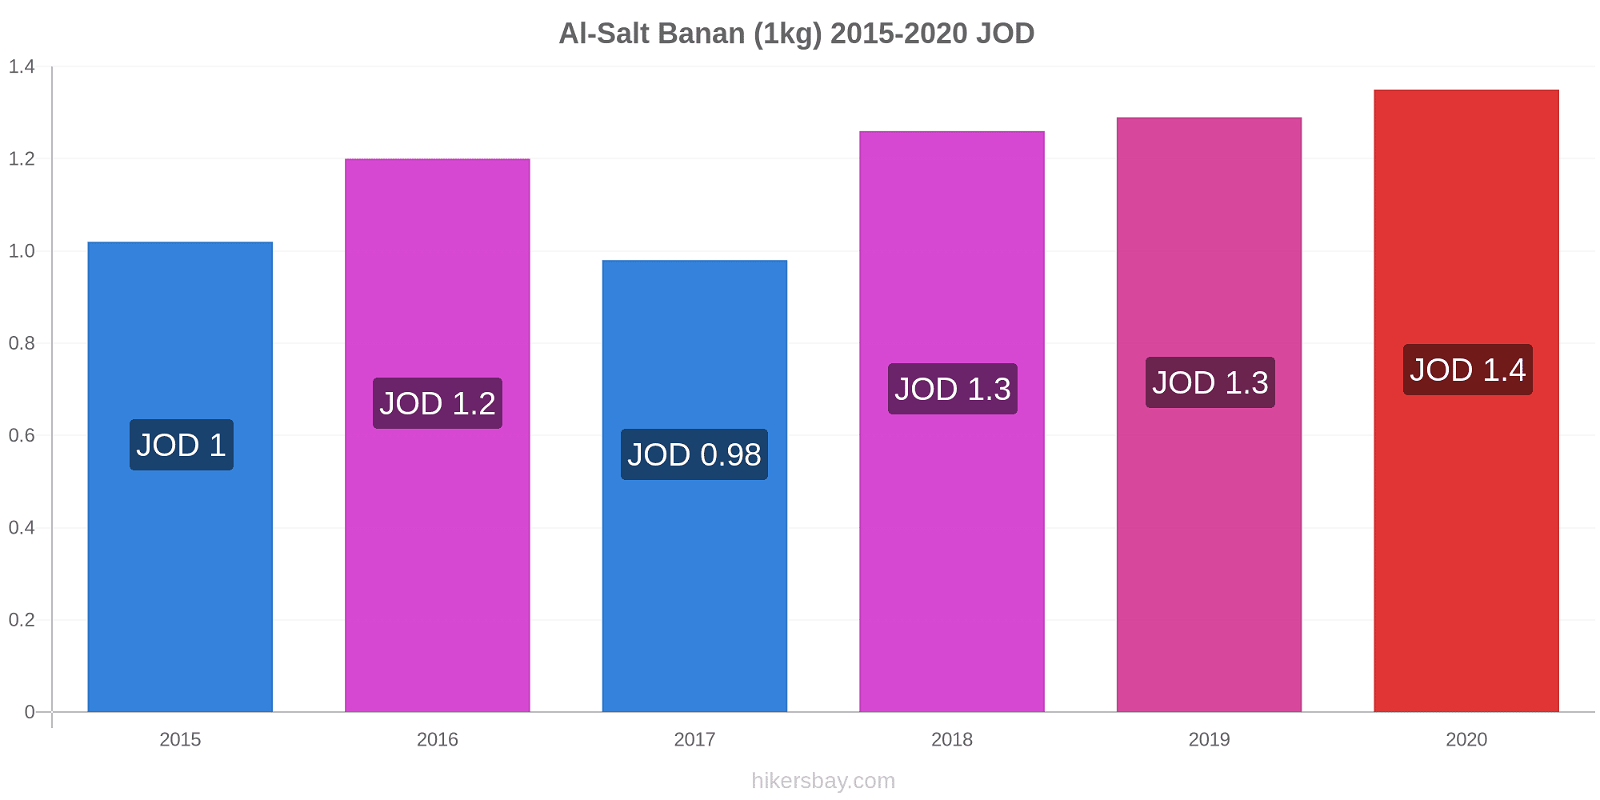 Al-Salt prisændringer Banan (1kg) hikersbay.com